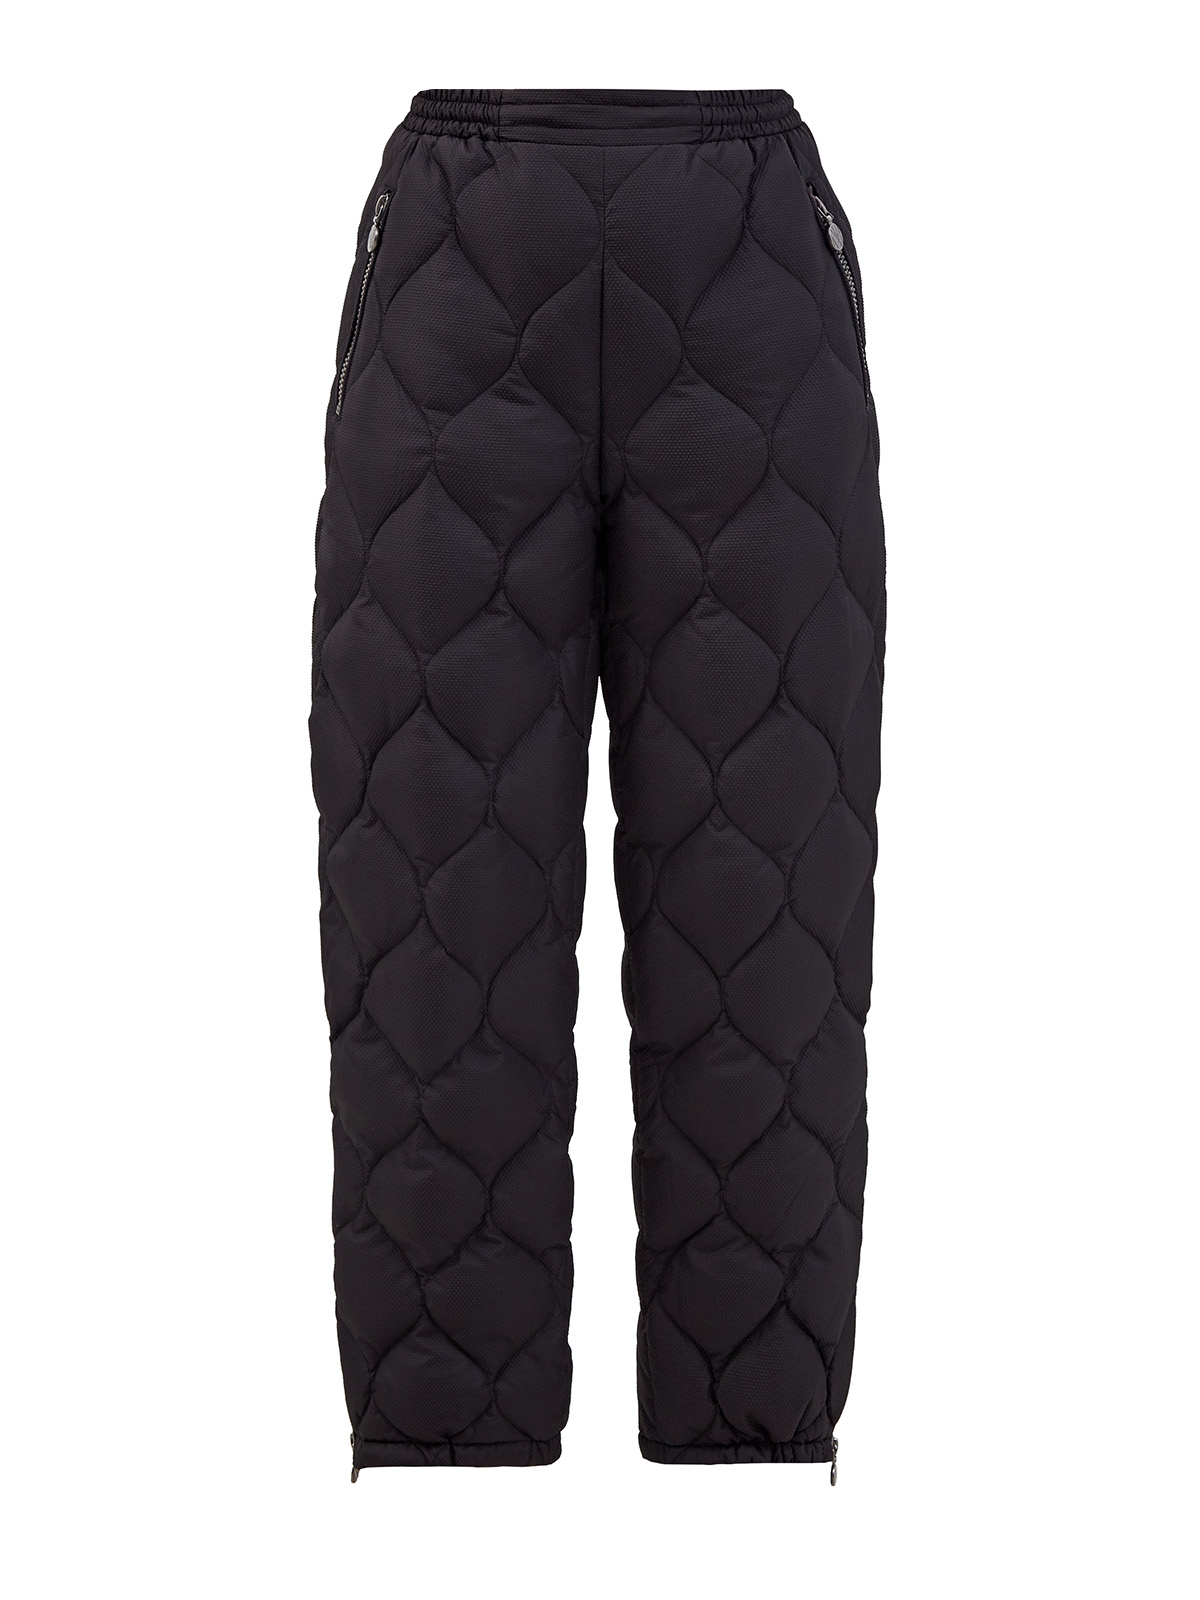 Пуховые стеганые брюки с разрезами на молниях NAUMI черного цвета